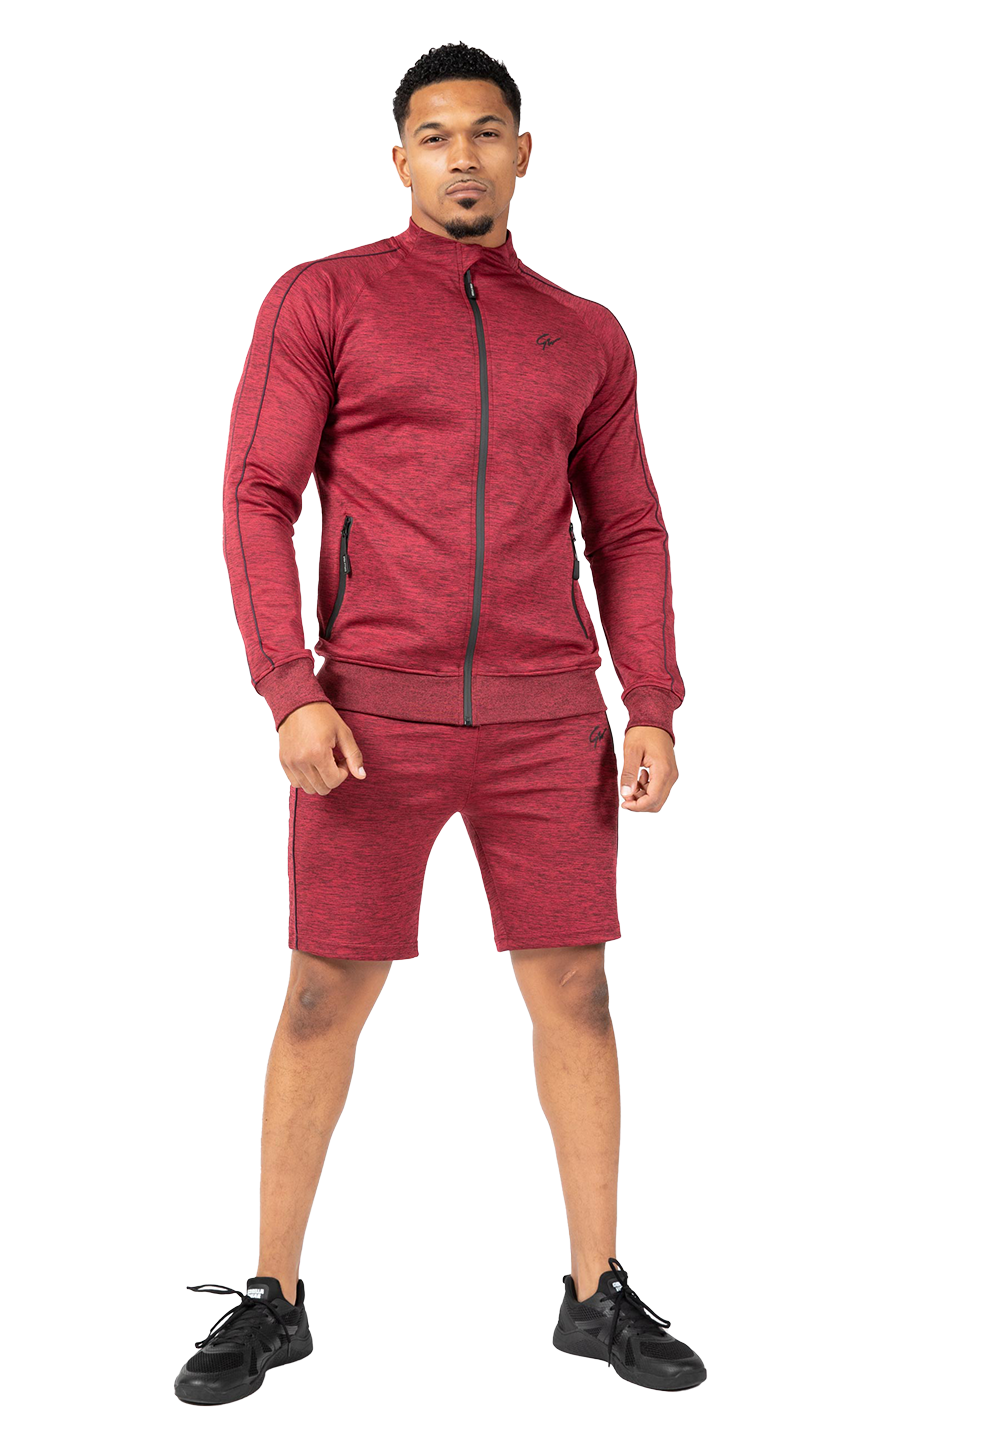 Шорты Wenden Track Shorts – Burgundy Red от Gorilla Wear